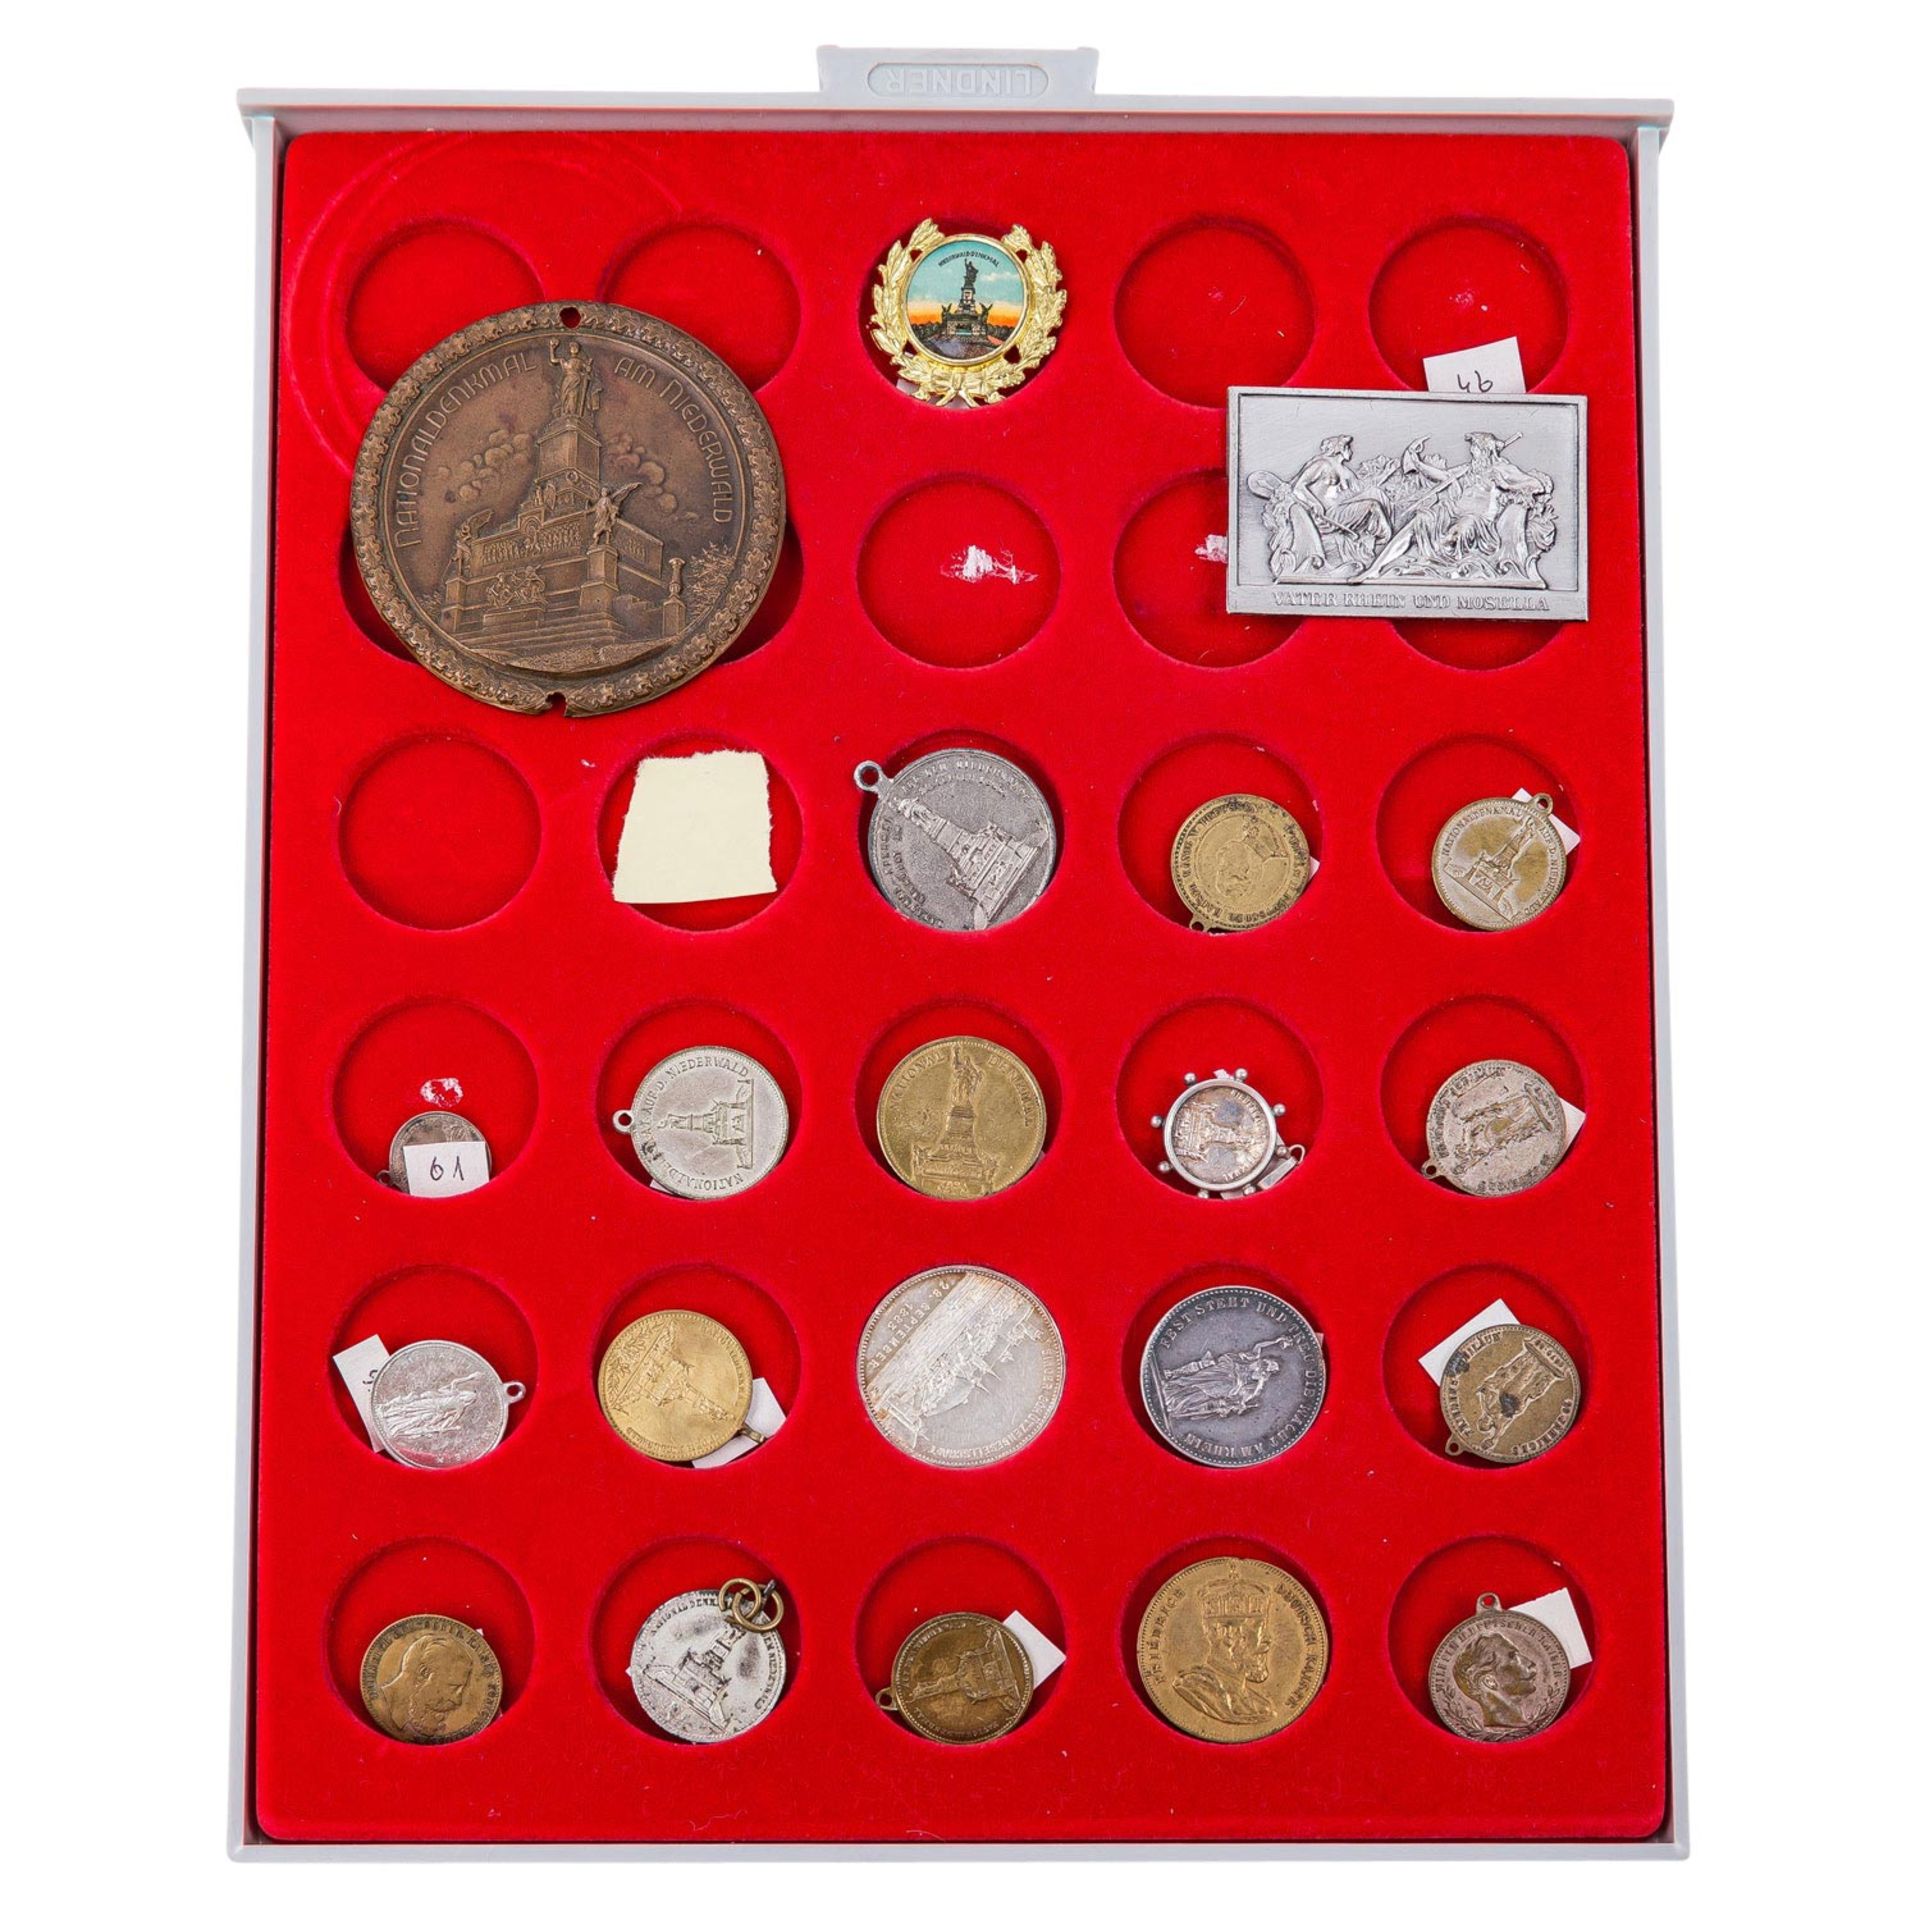 Umfangreiche Sammlung an Plaketten, Medaillen, Medaillons, Abzeichen etc. mit dem nationalen Niederw - Image 2 of 9